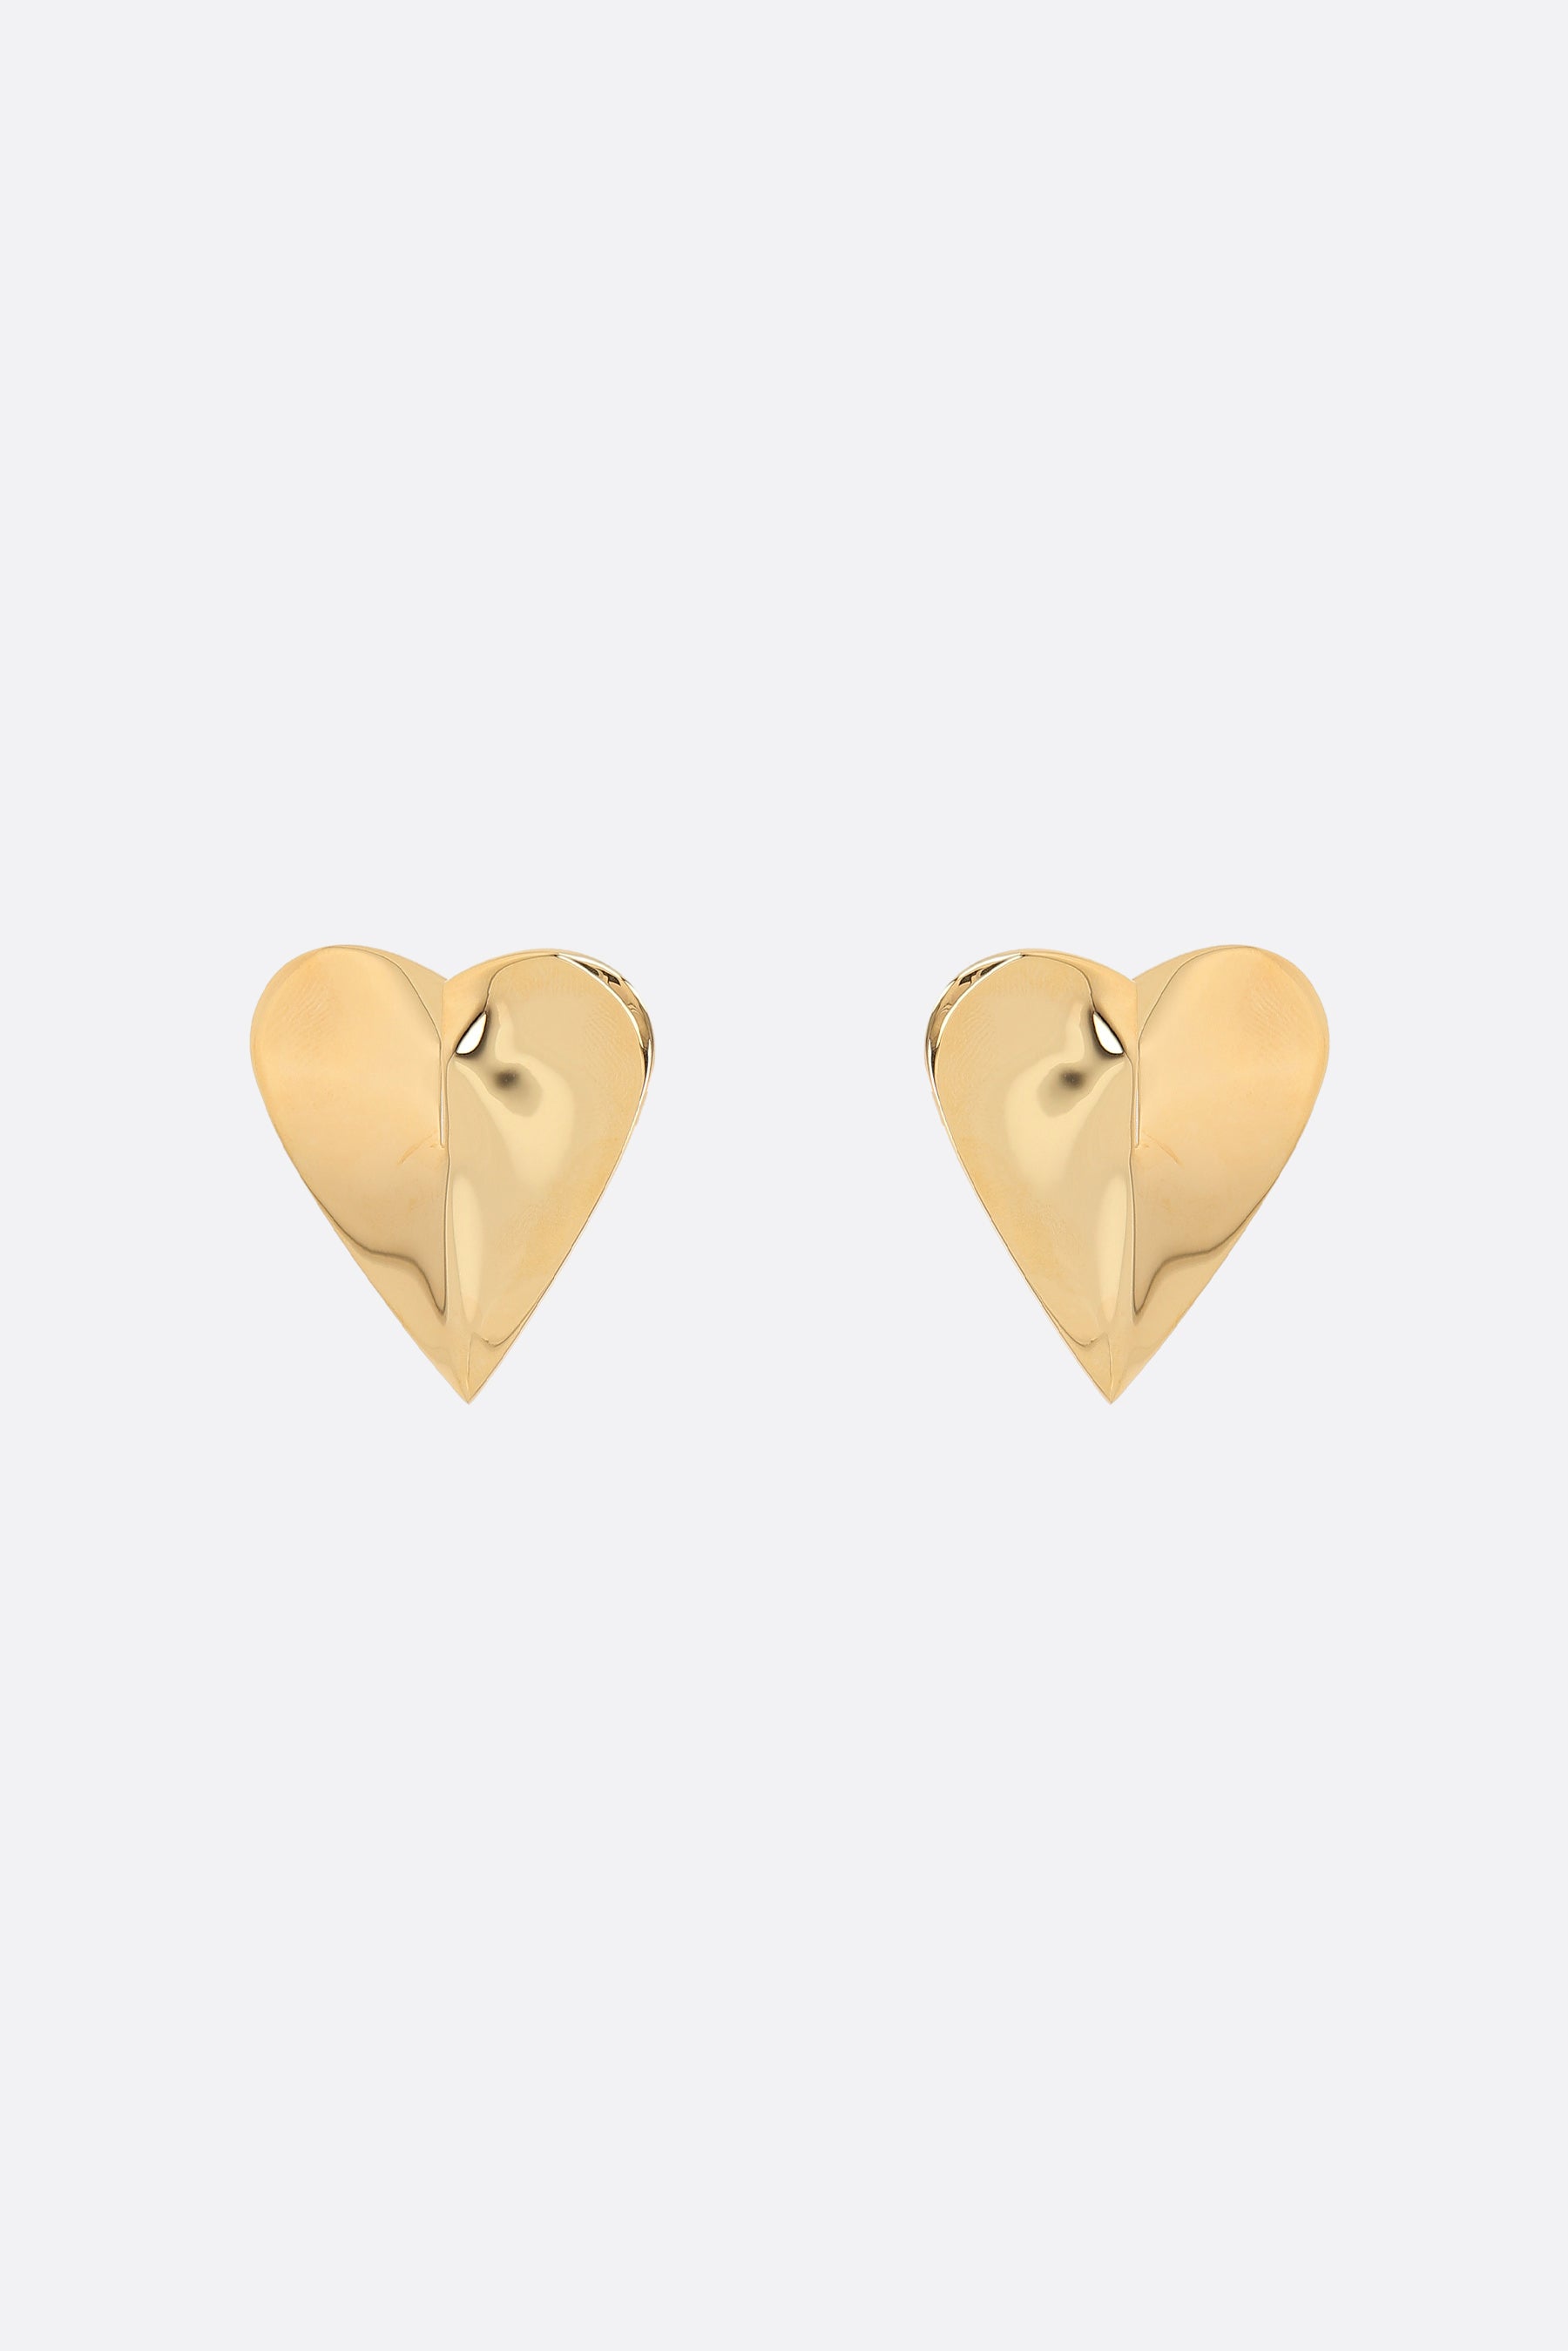 Le Cœur brass earrings